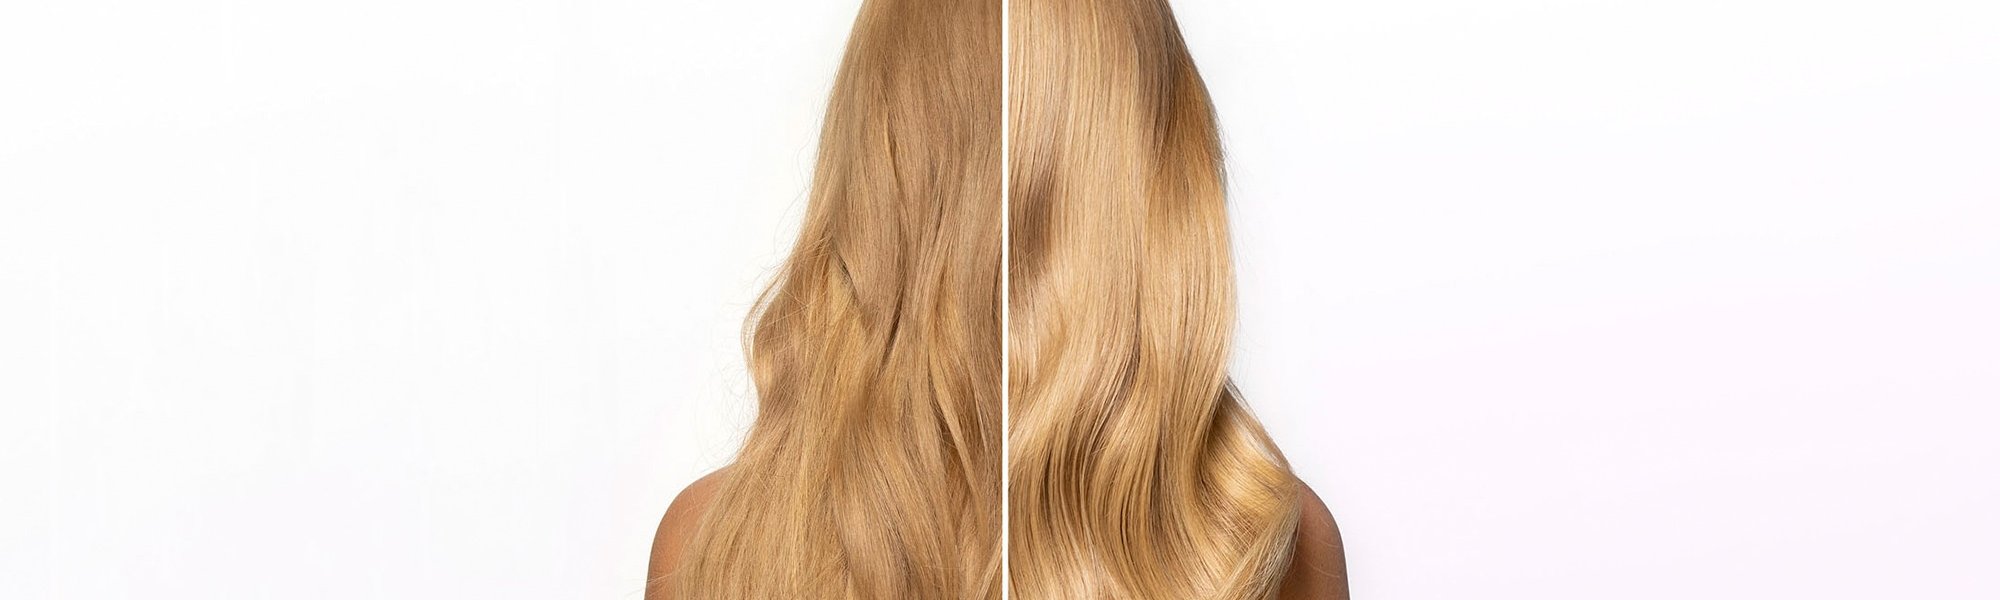 Kopf von hinten einer Frau mit langen blonden Haaren - vorher / nachher Anwendung Haarspitzenfluid